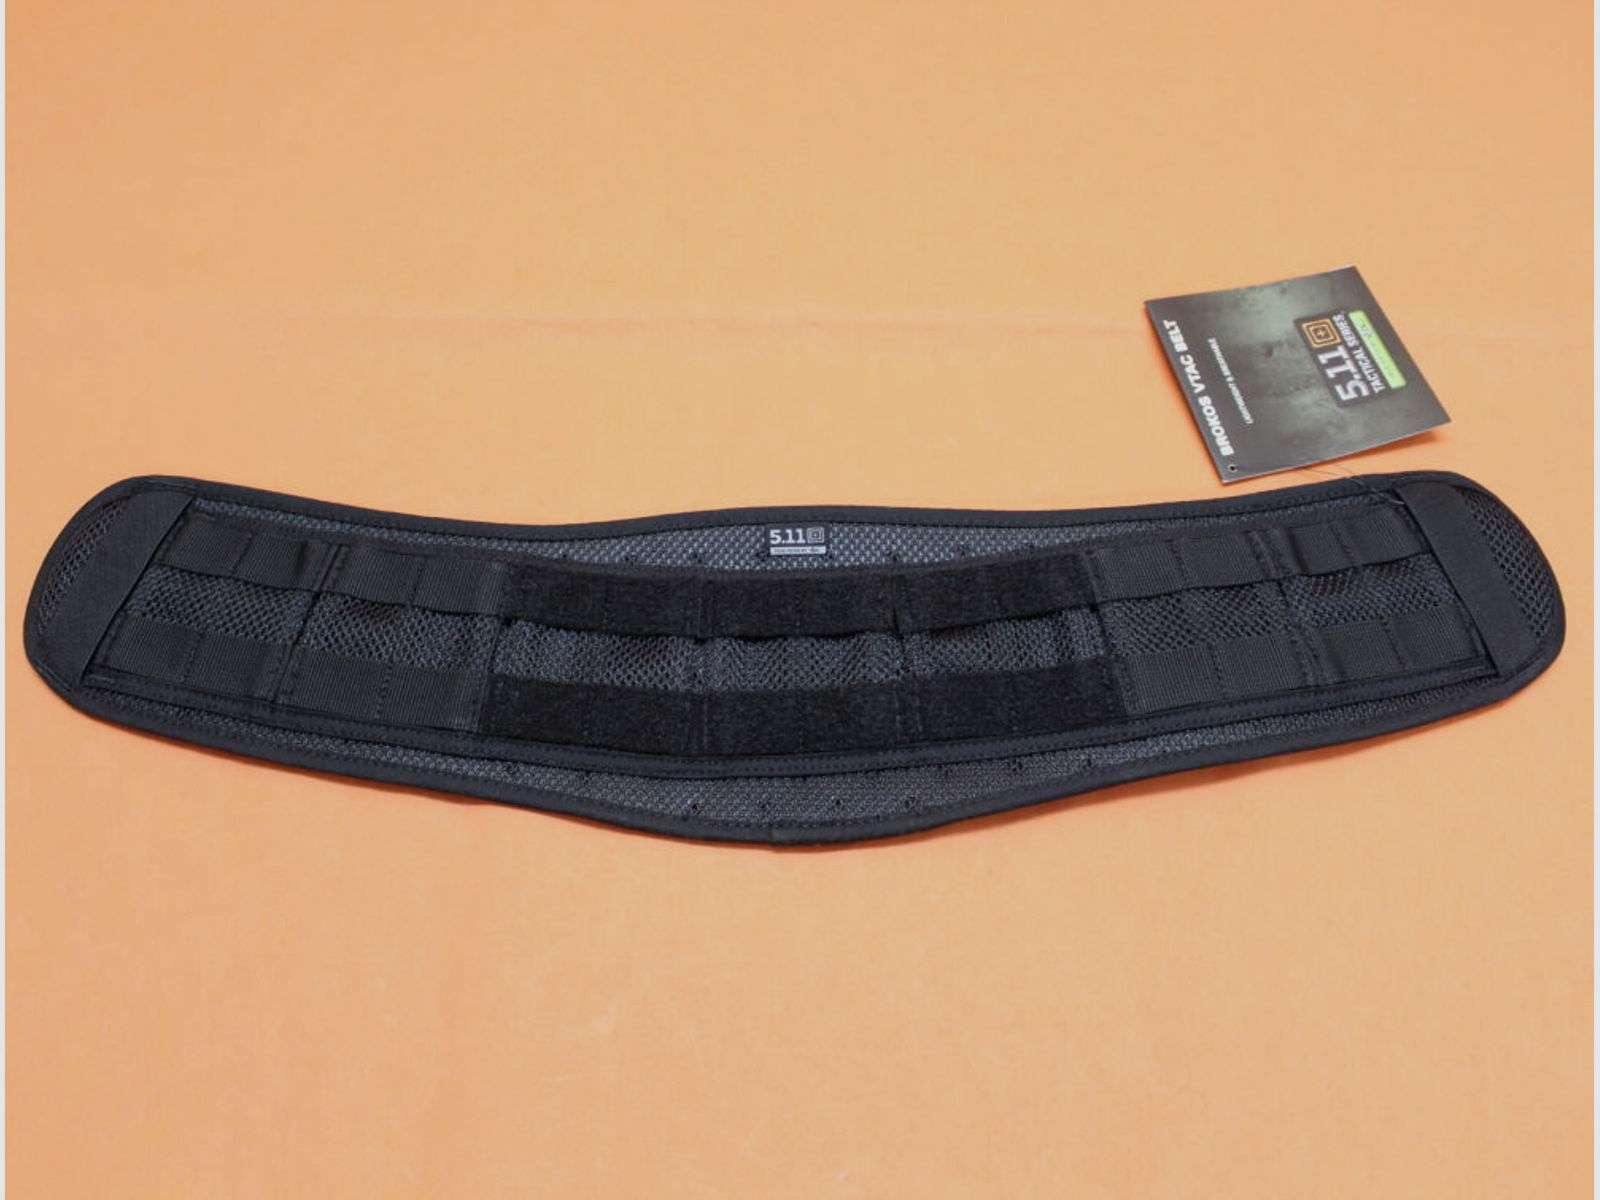 5.11	 5.11 VTAC Brokos Belt (58642) 019 Black Größe S-M Gürtel zum Anbringen von Holstern, Taschen etc.